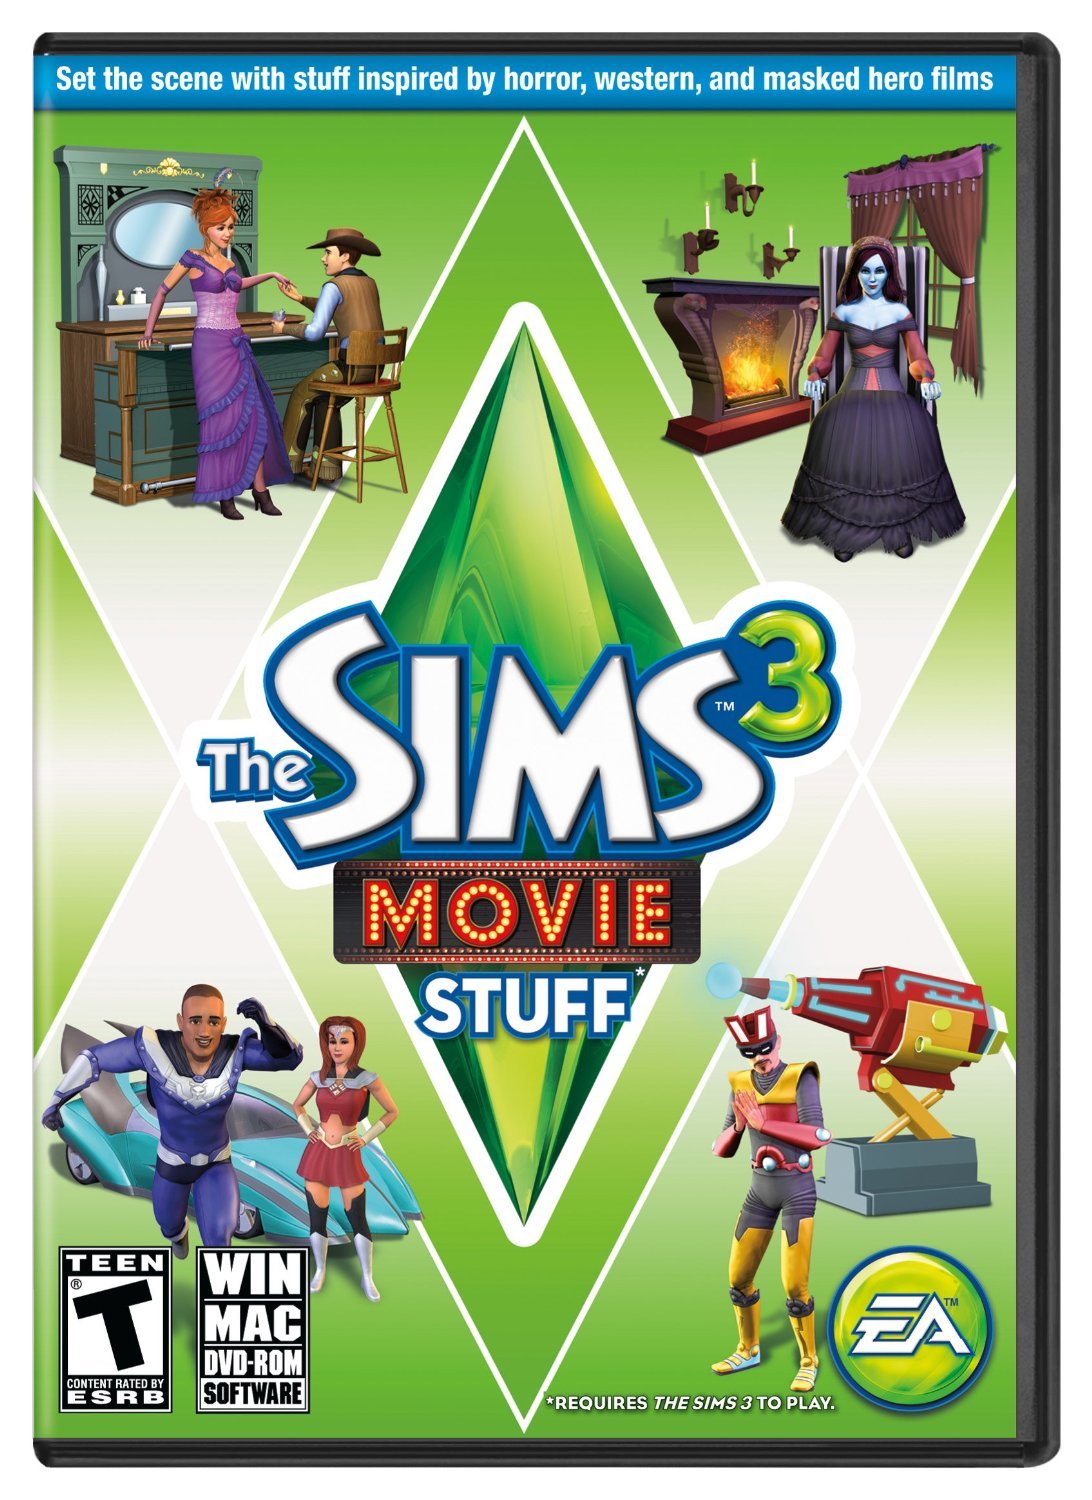 Sims 4 base game download mac 10.10